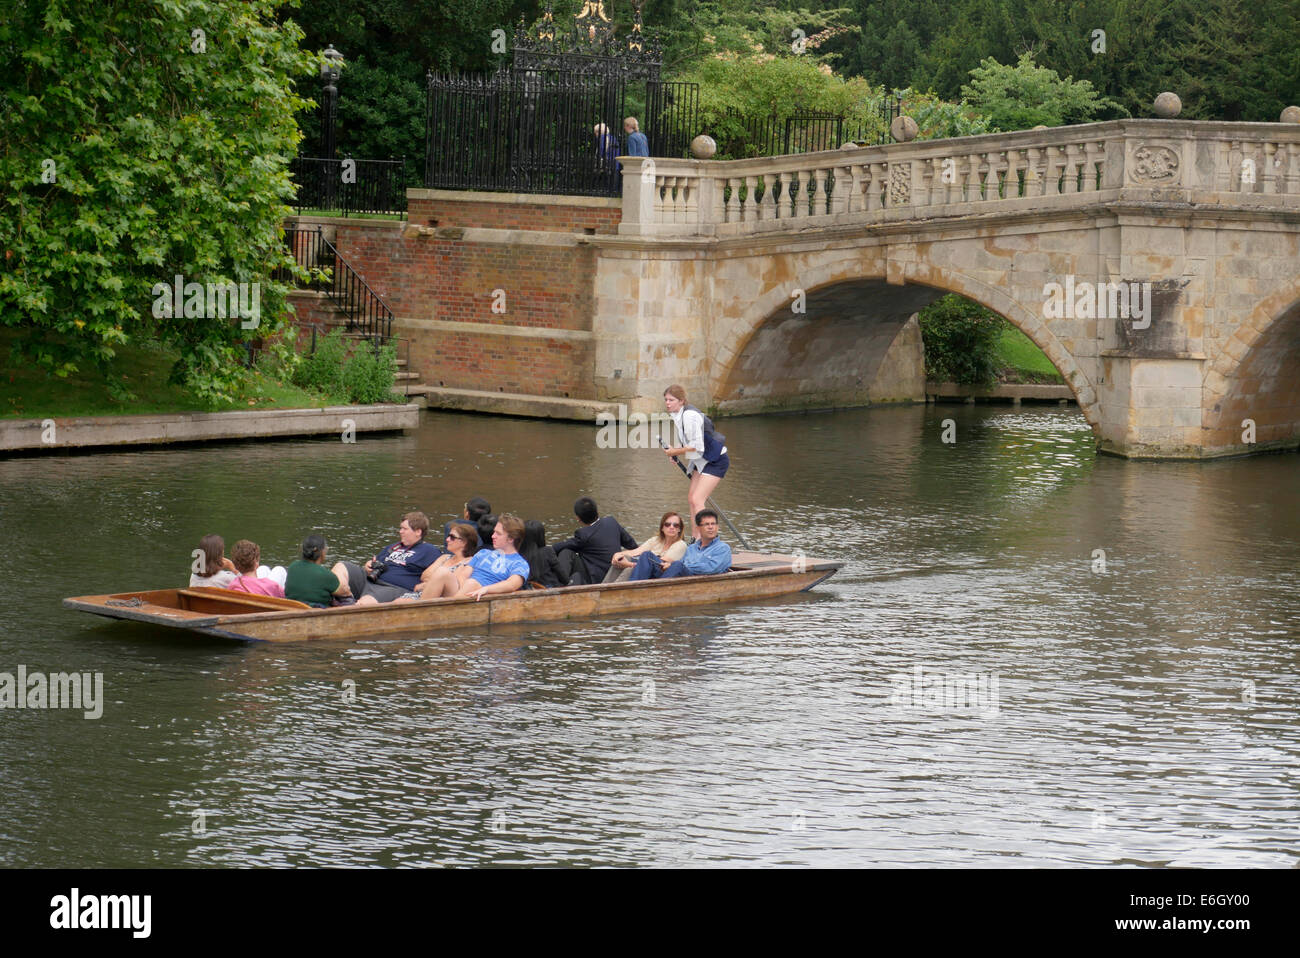 Vida universitaria - punts del río Cam, cerca de la Universidad de Cambridge, Cambridge, Inglaterra Foto de stock